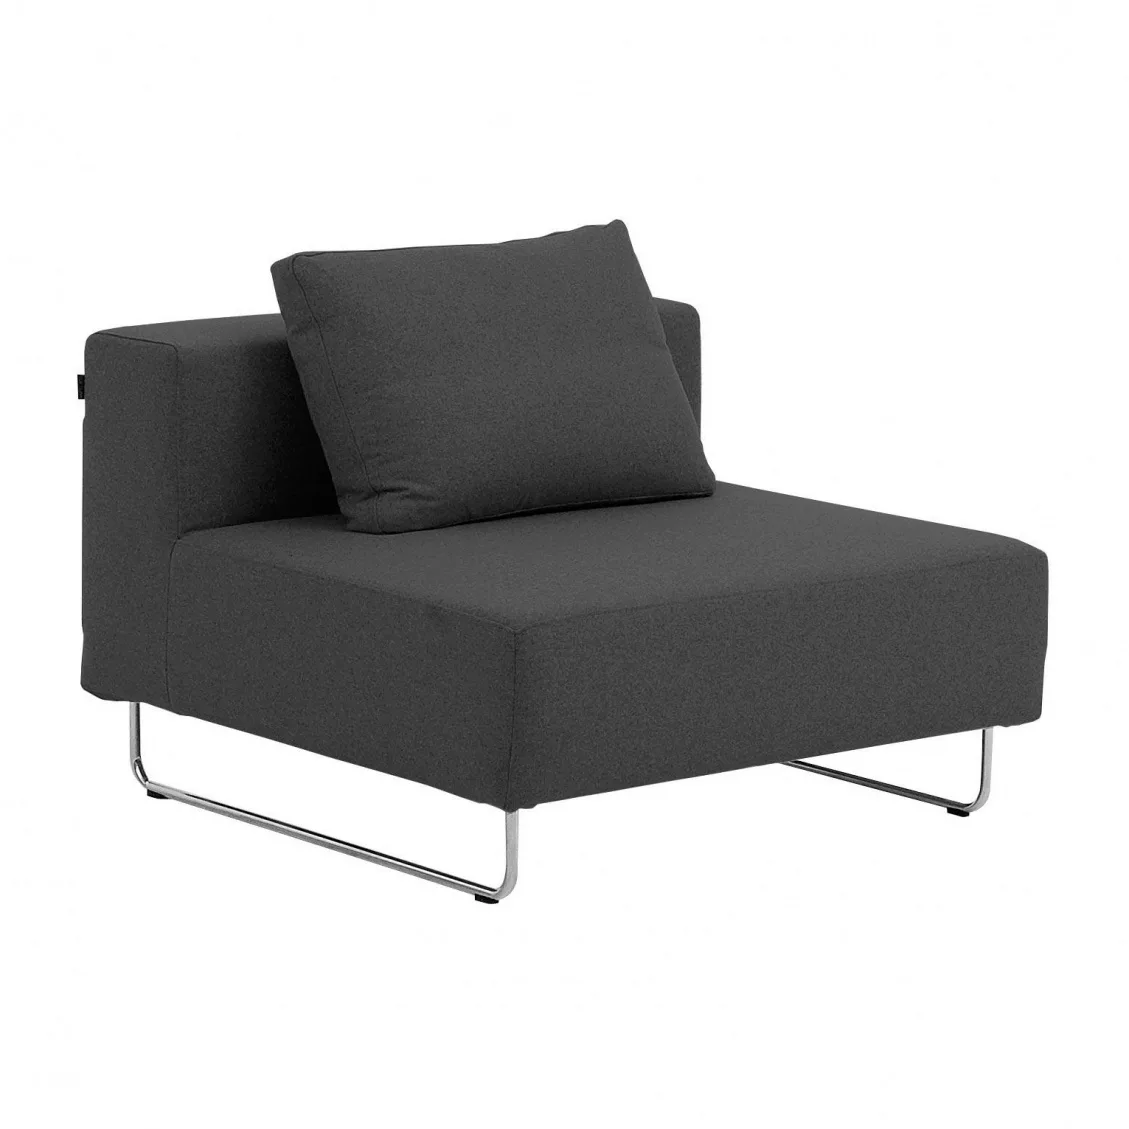 Softline - Ohio Sofa-Einzelelemente 98x82x98cm - anthrazit/Filz 623/BxHxT 9 günstig online kaufen